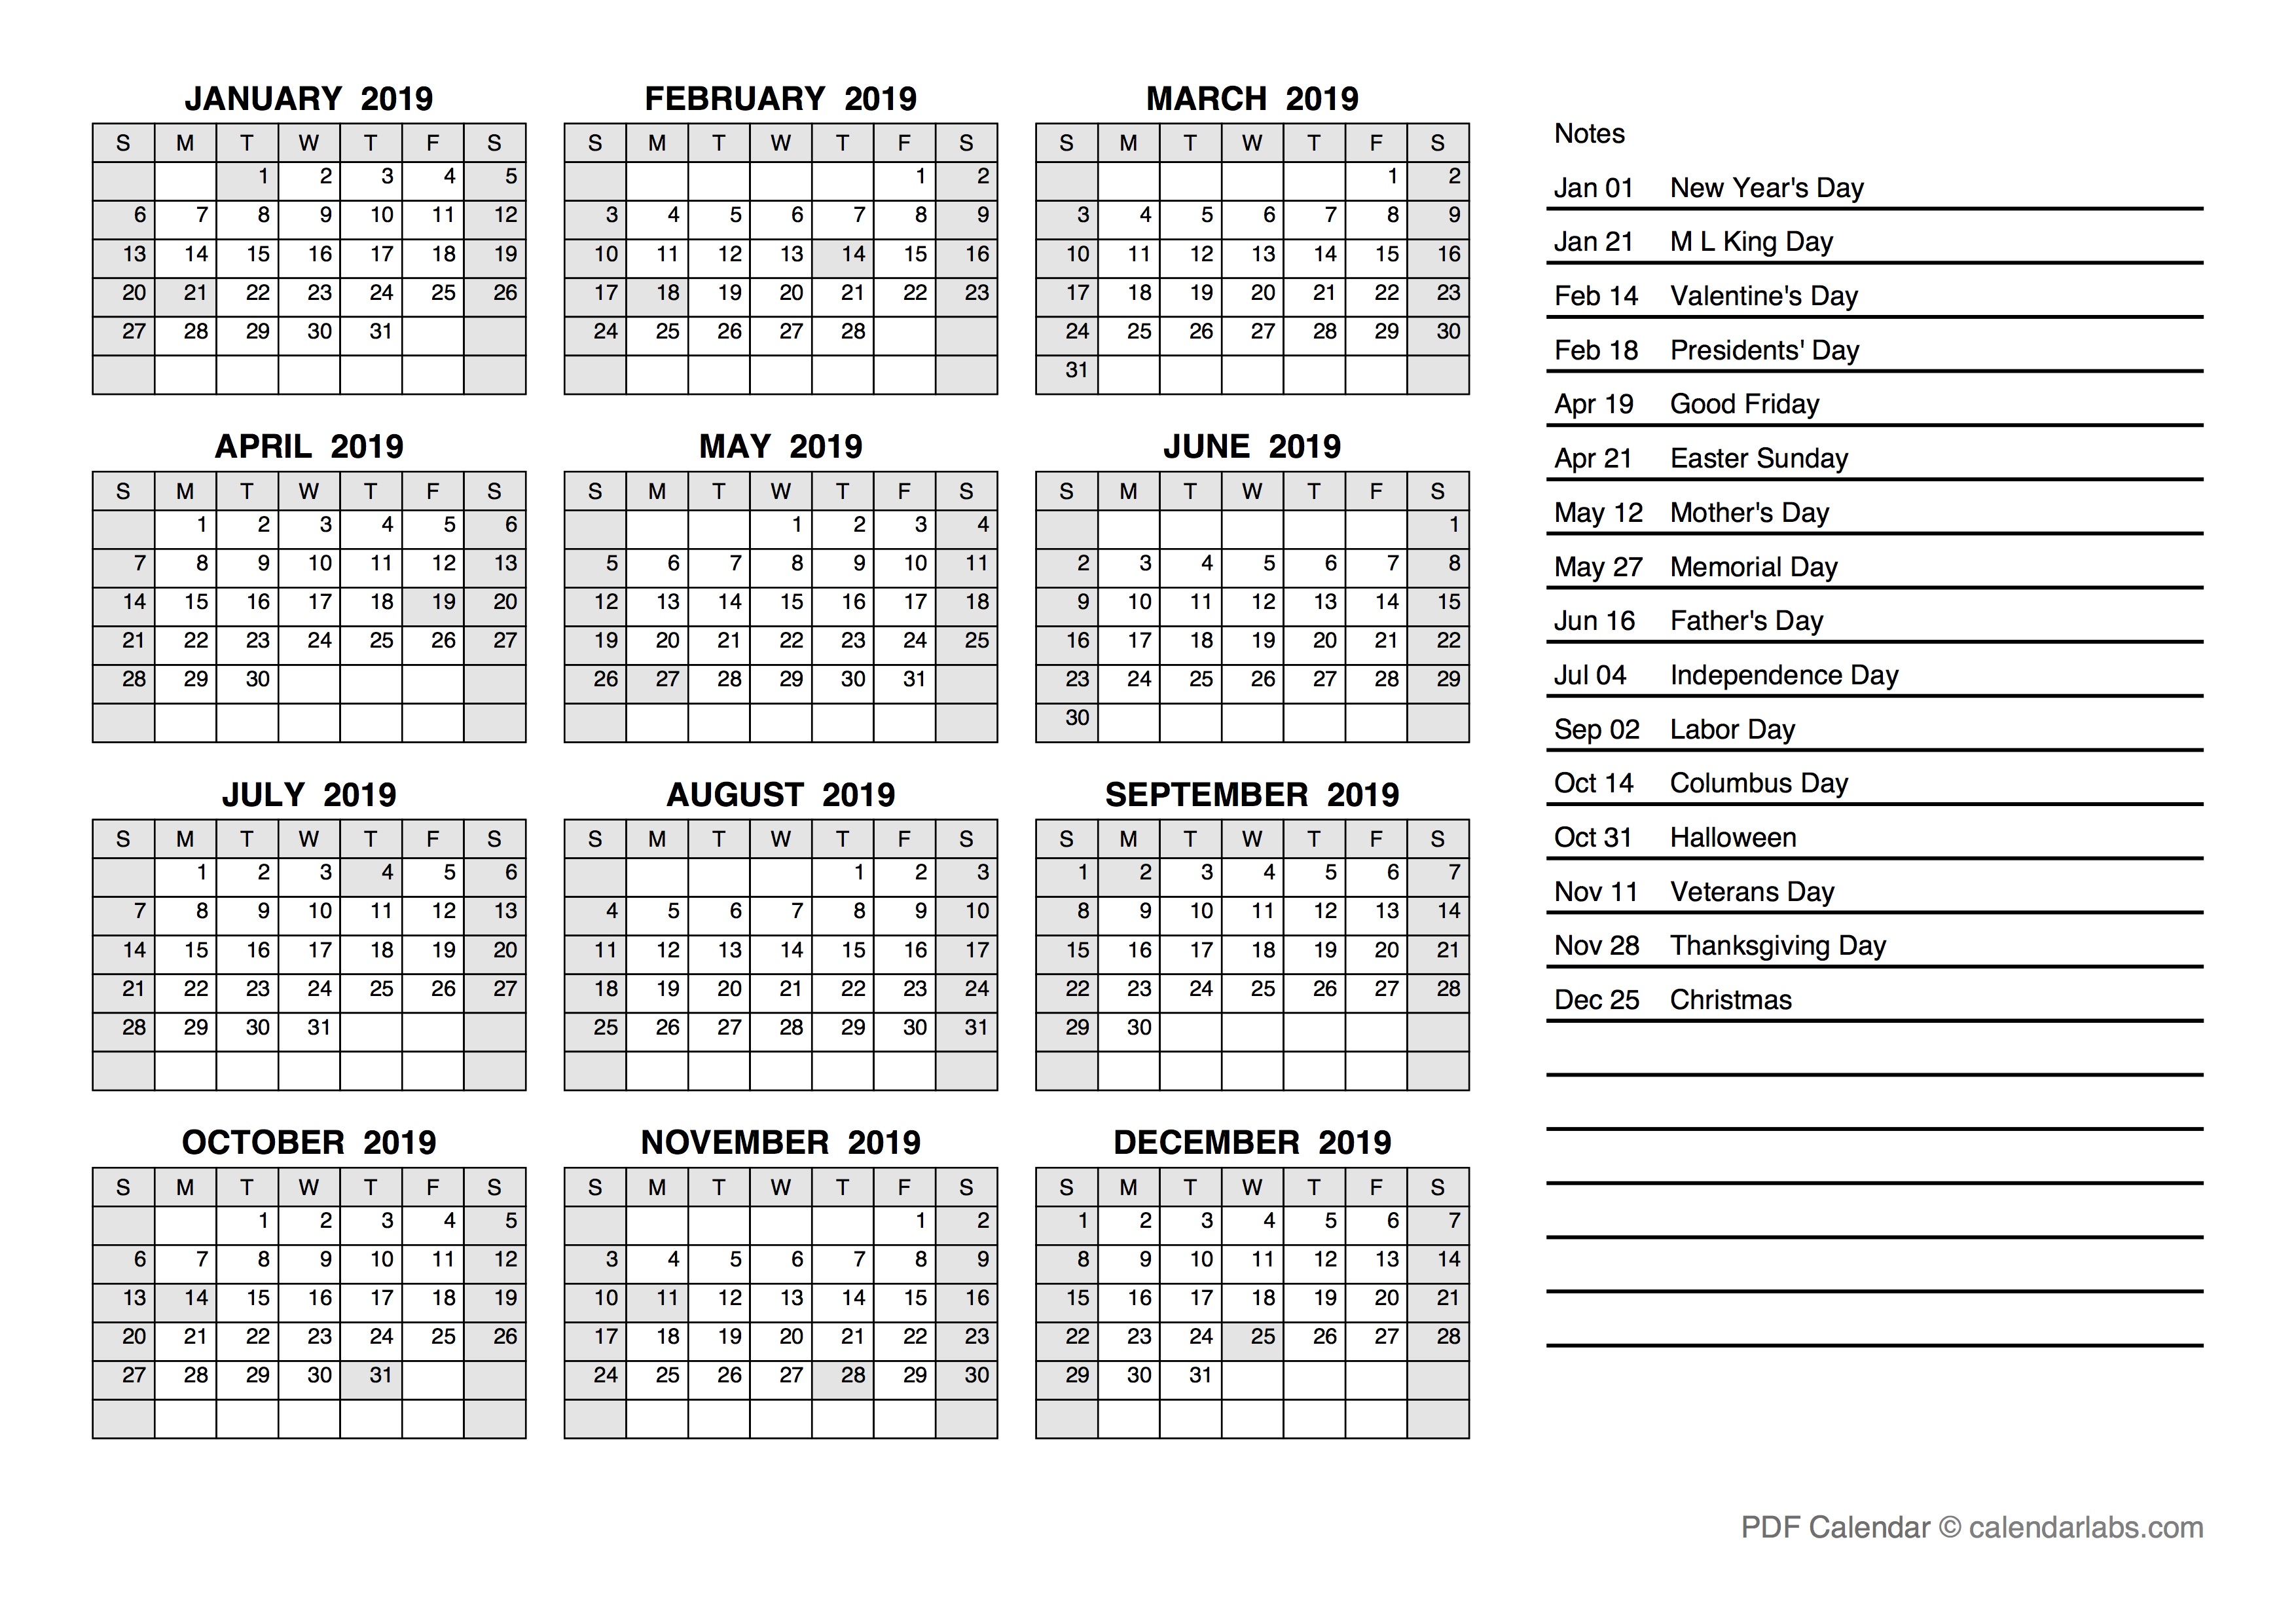 Julian Calendar 2019 Customize and Print